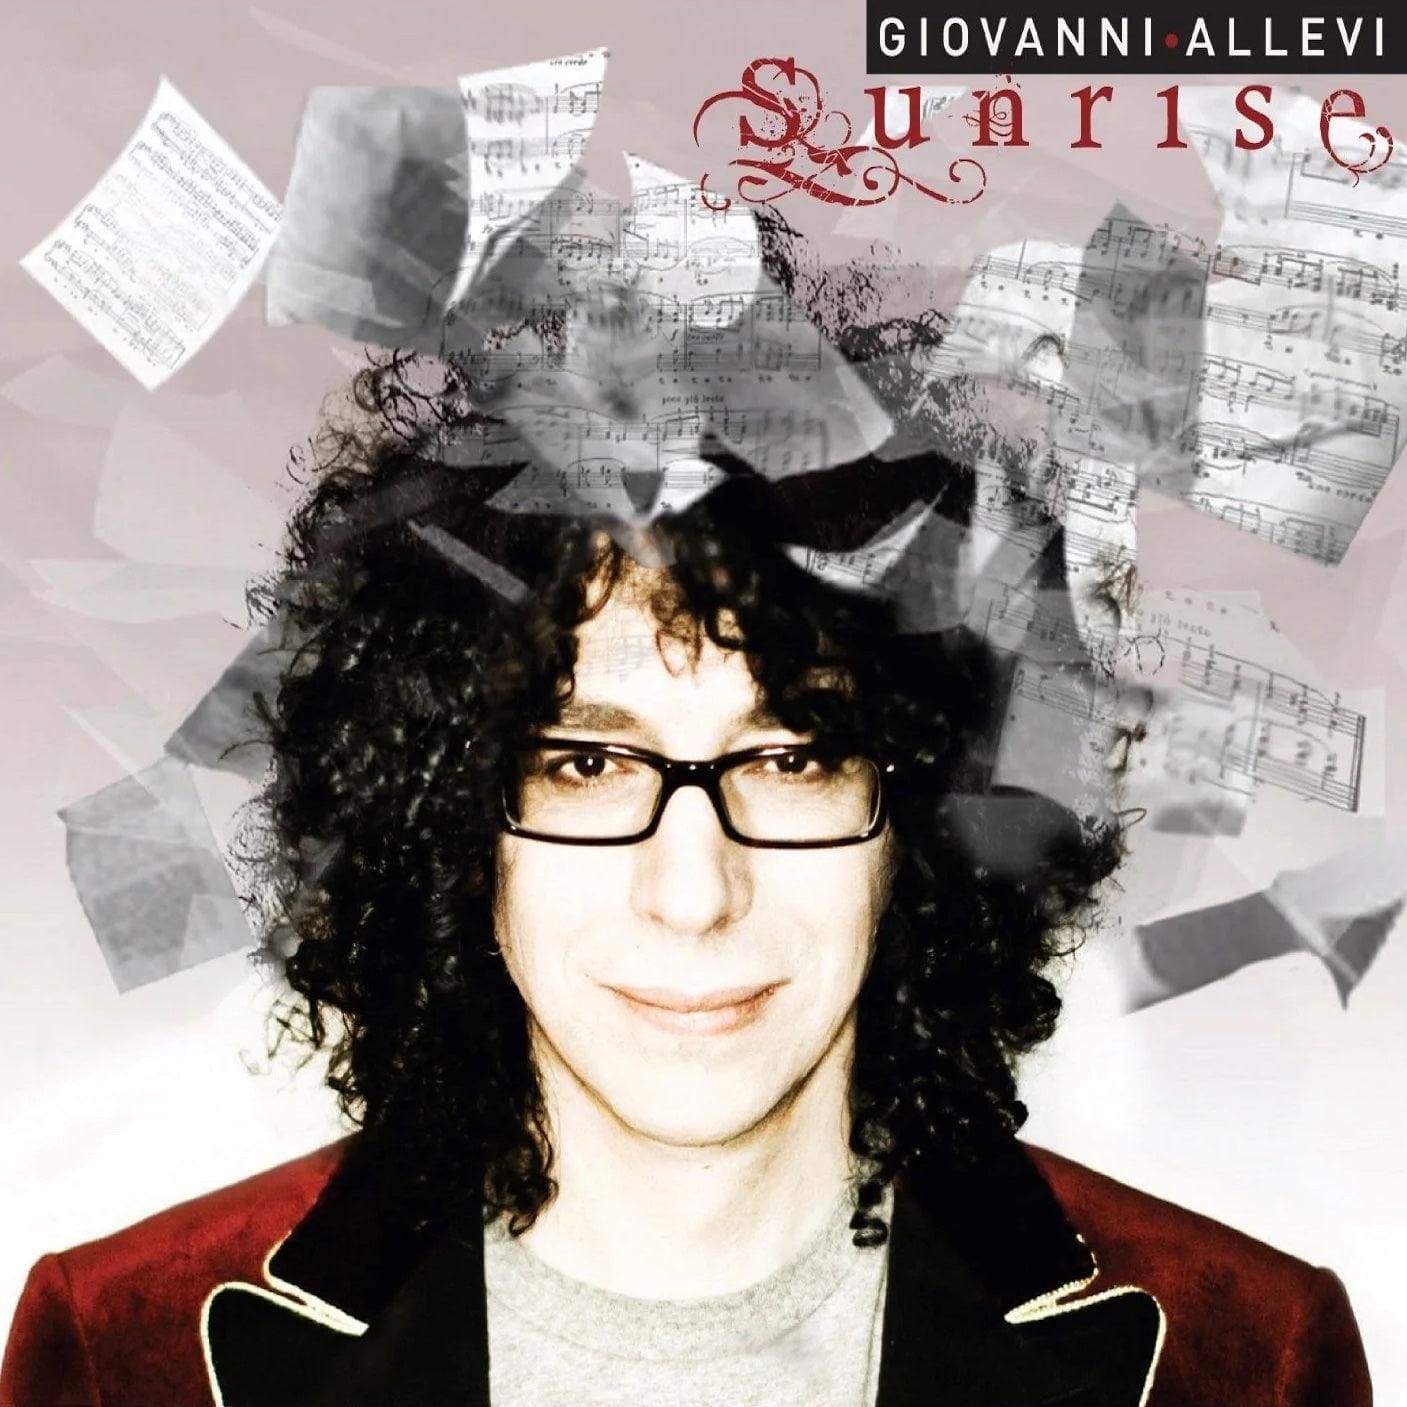 Giovanni Allevi cover Sunrise cd